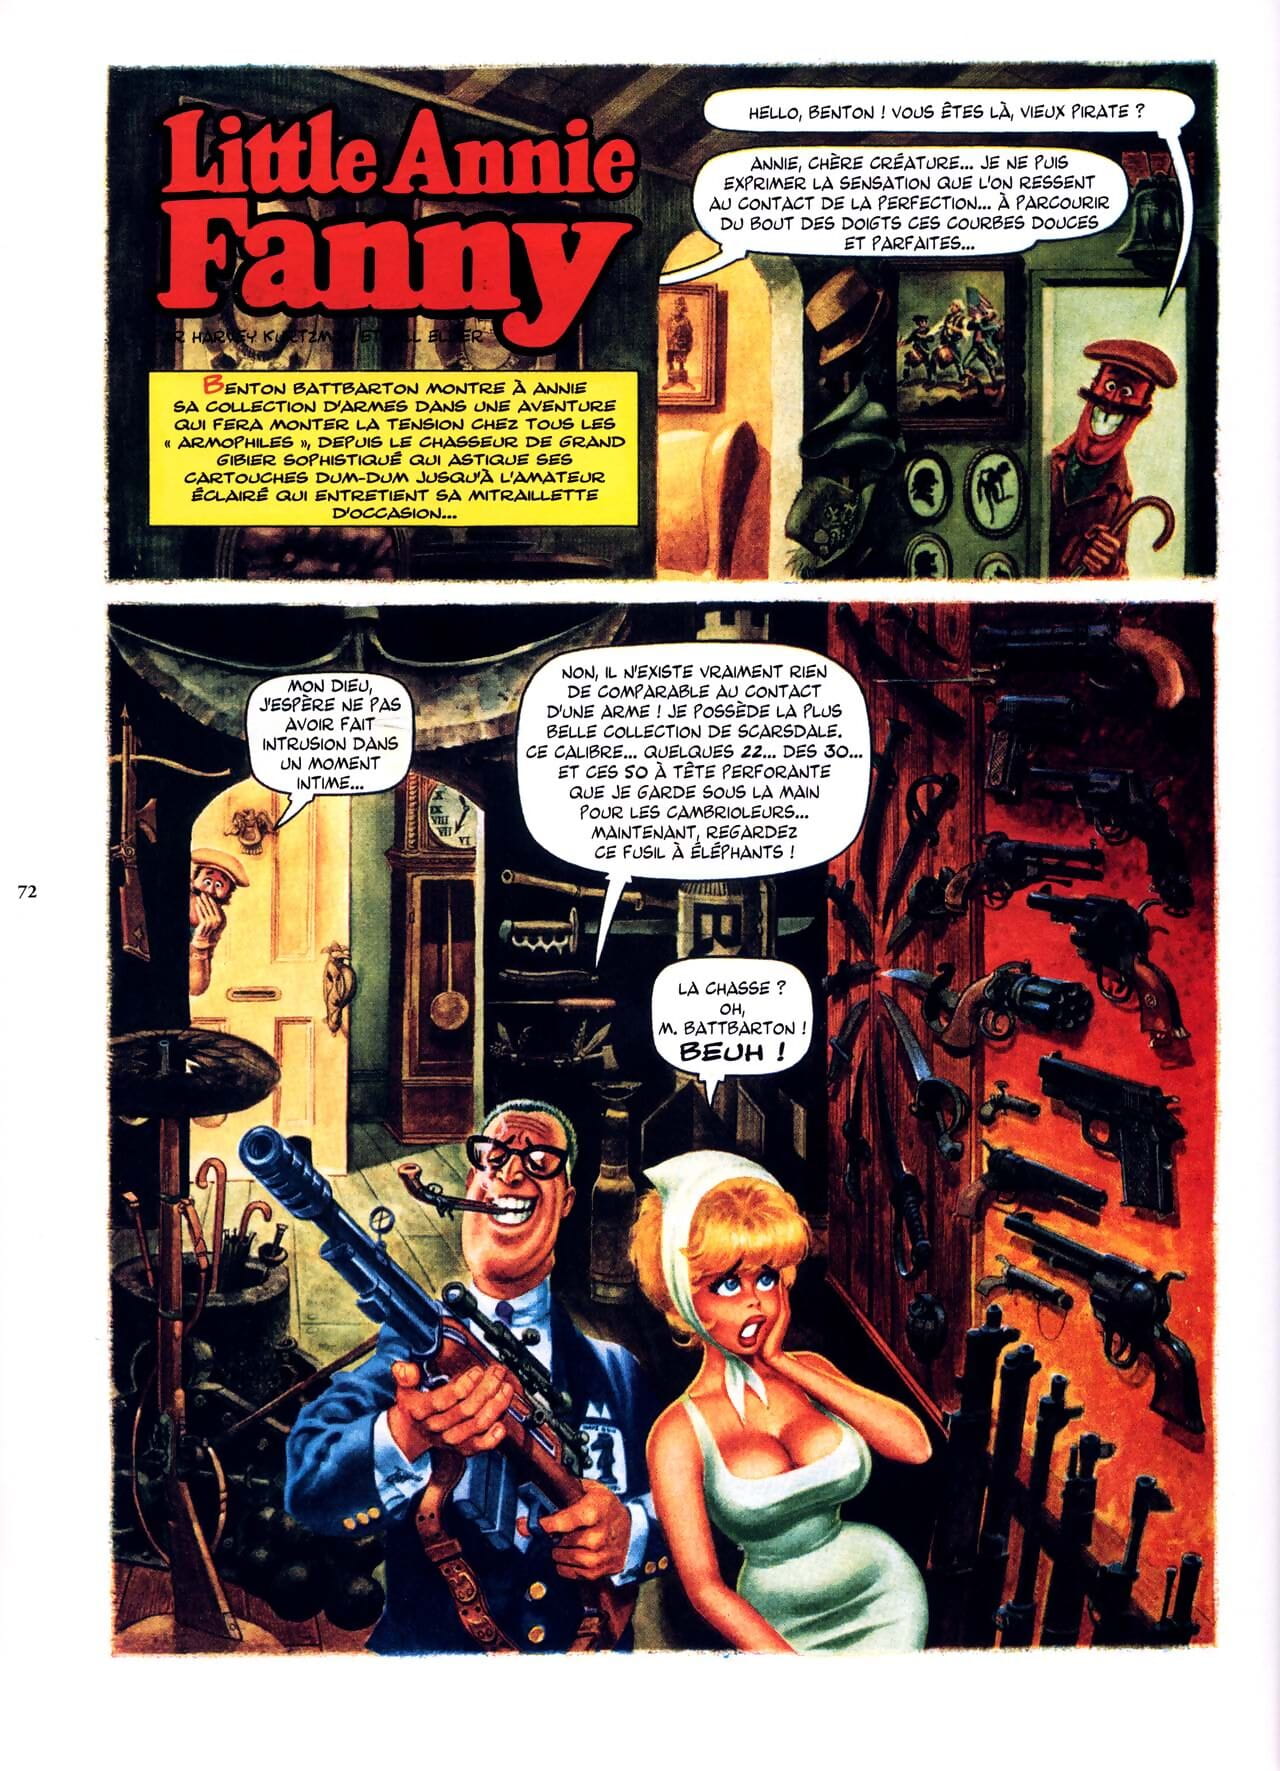 pouco Annie fanny vol. 1 - 1962-1965 - parte 4 page 1